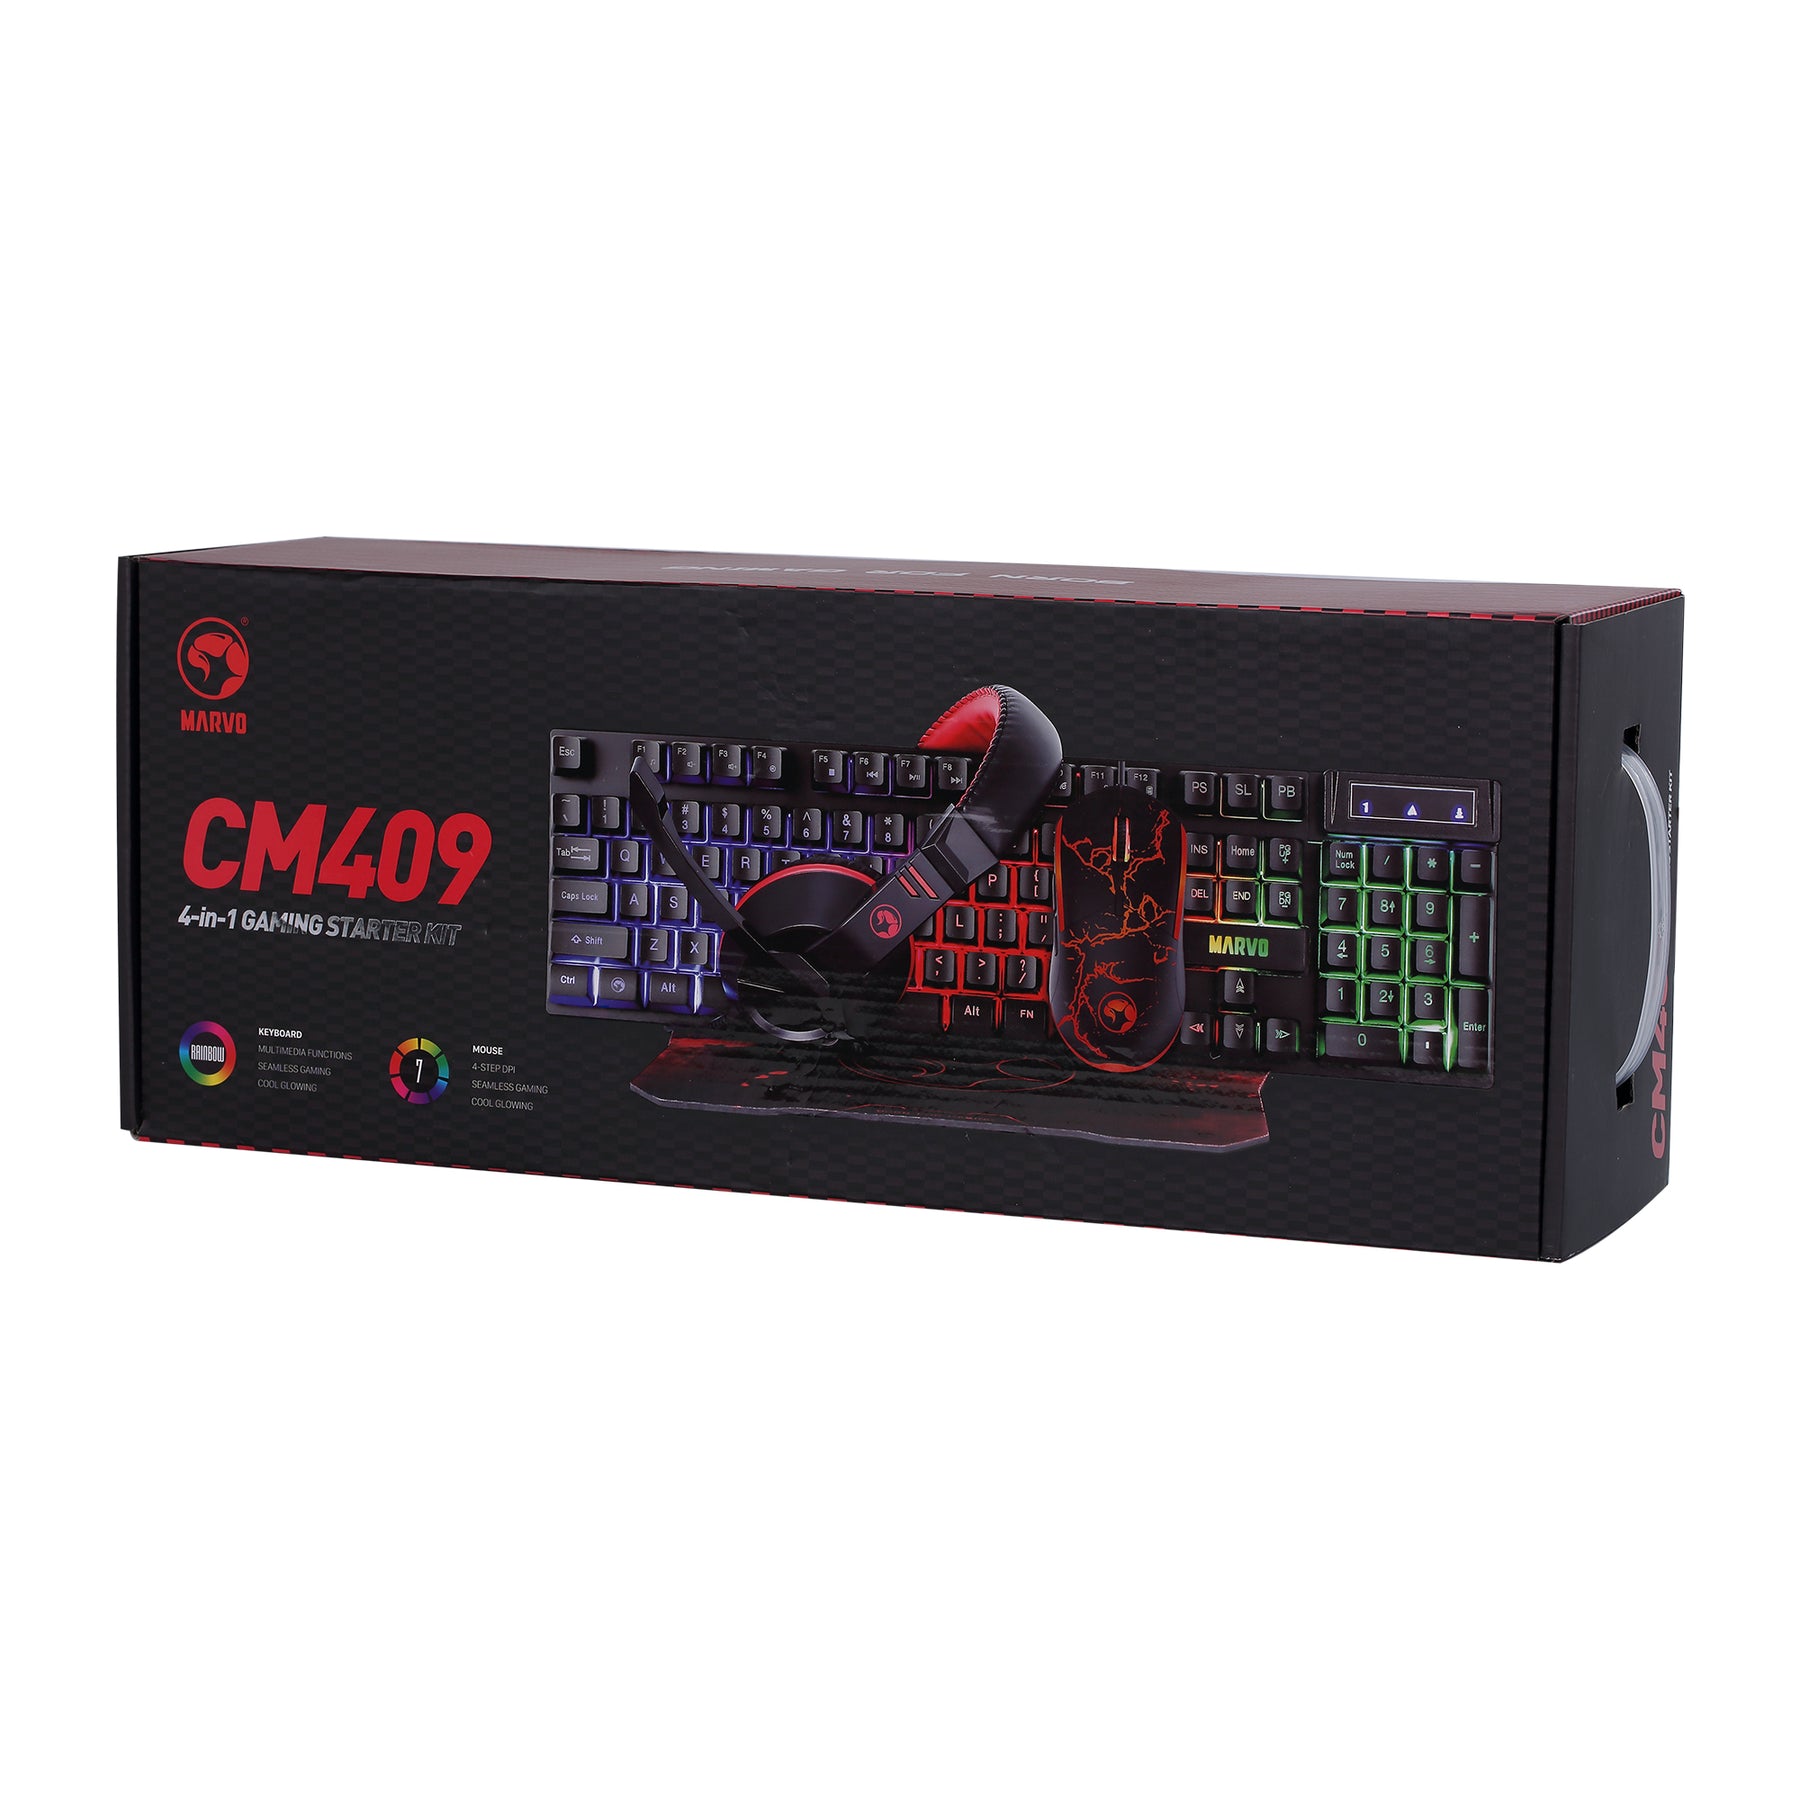 Marvo CM409 4 in 1 Gaming Combo